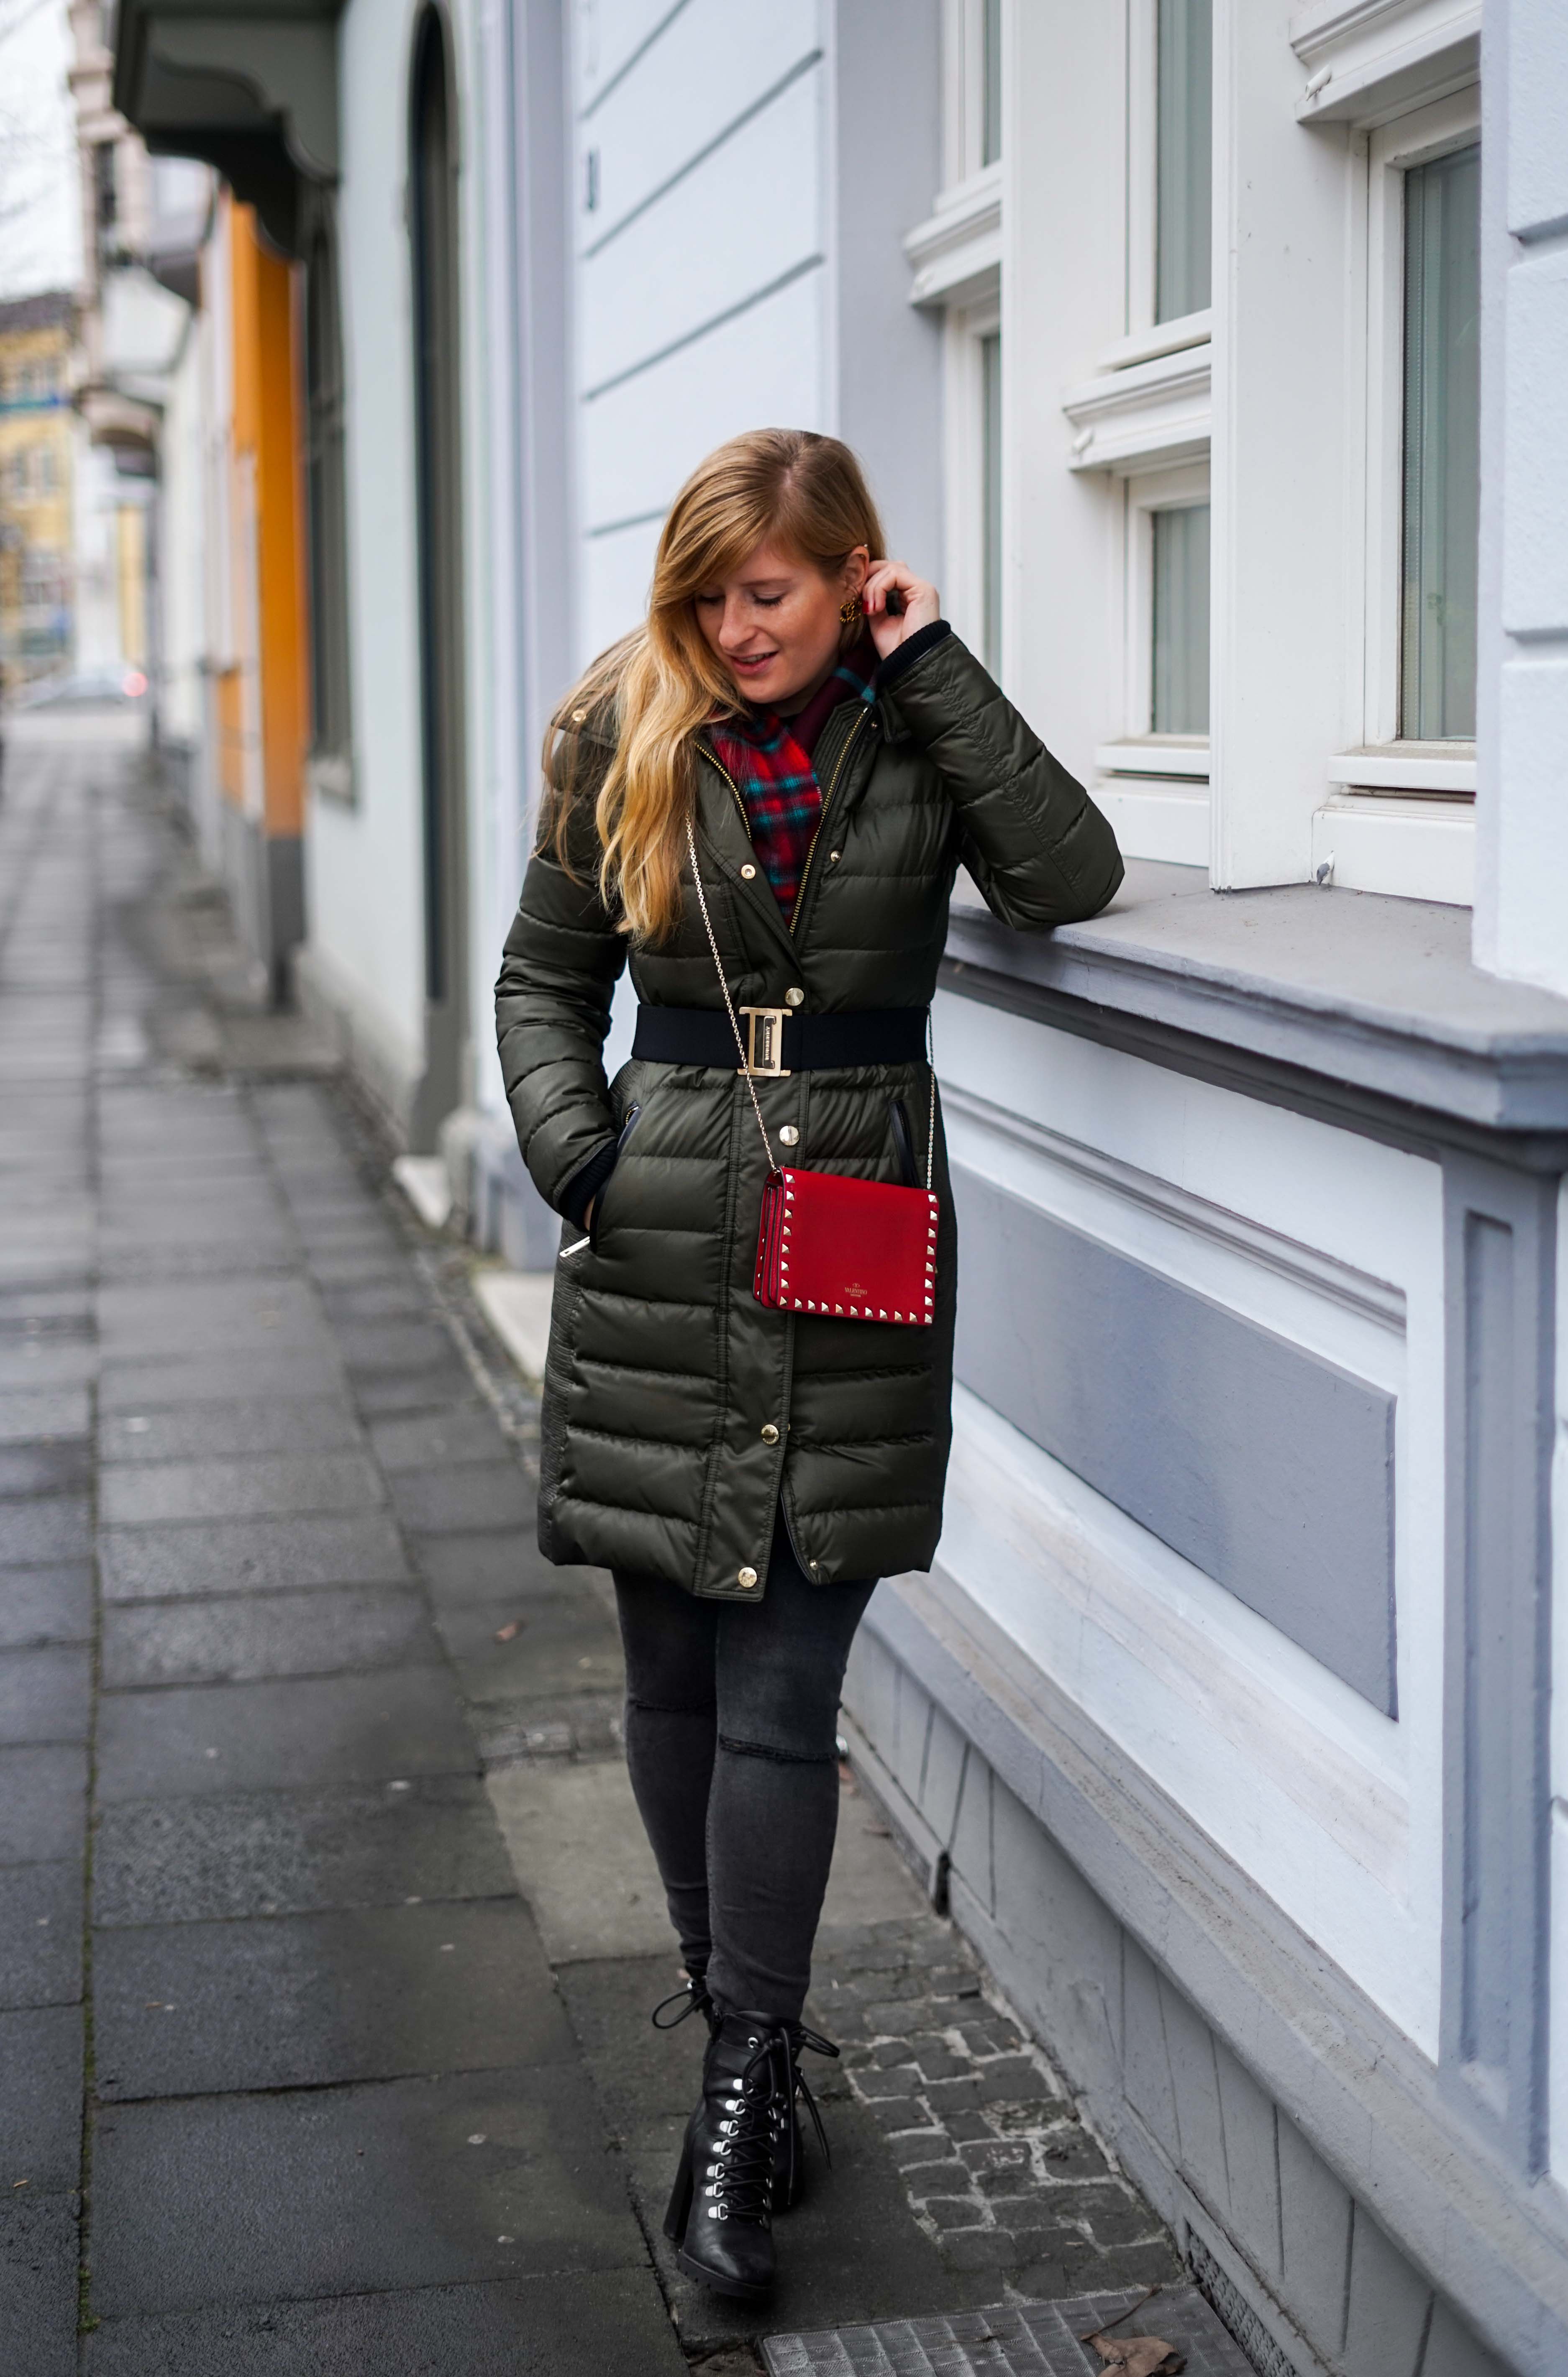 Burberry Winterjacke Grün Modeblog Winter Outfit Bonn Stiefeletten kombinieren 91